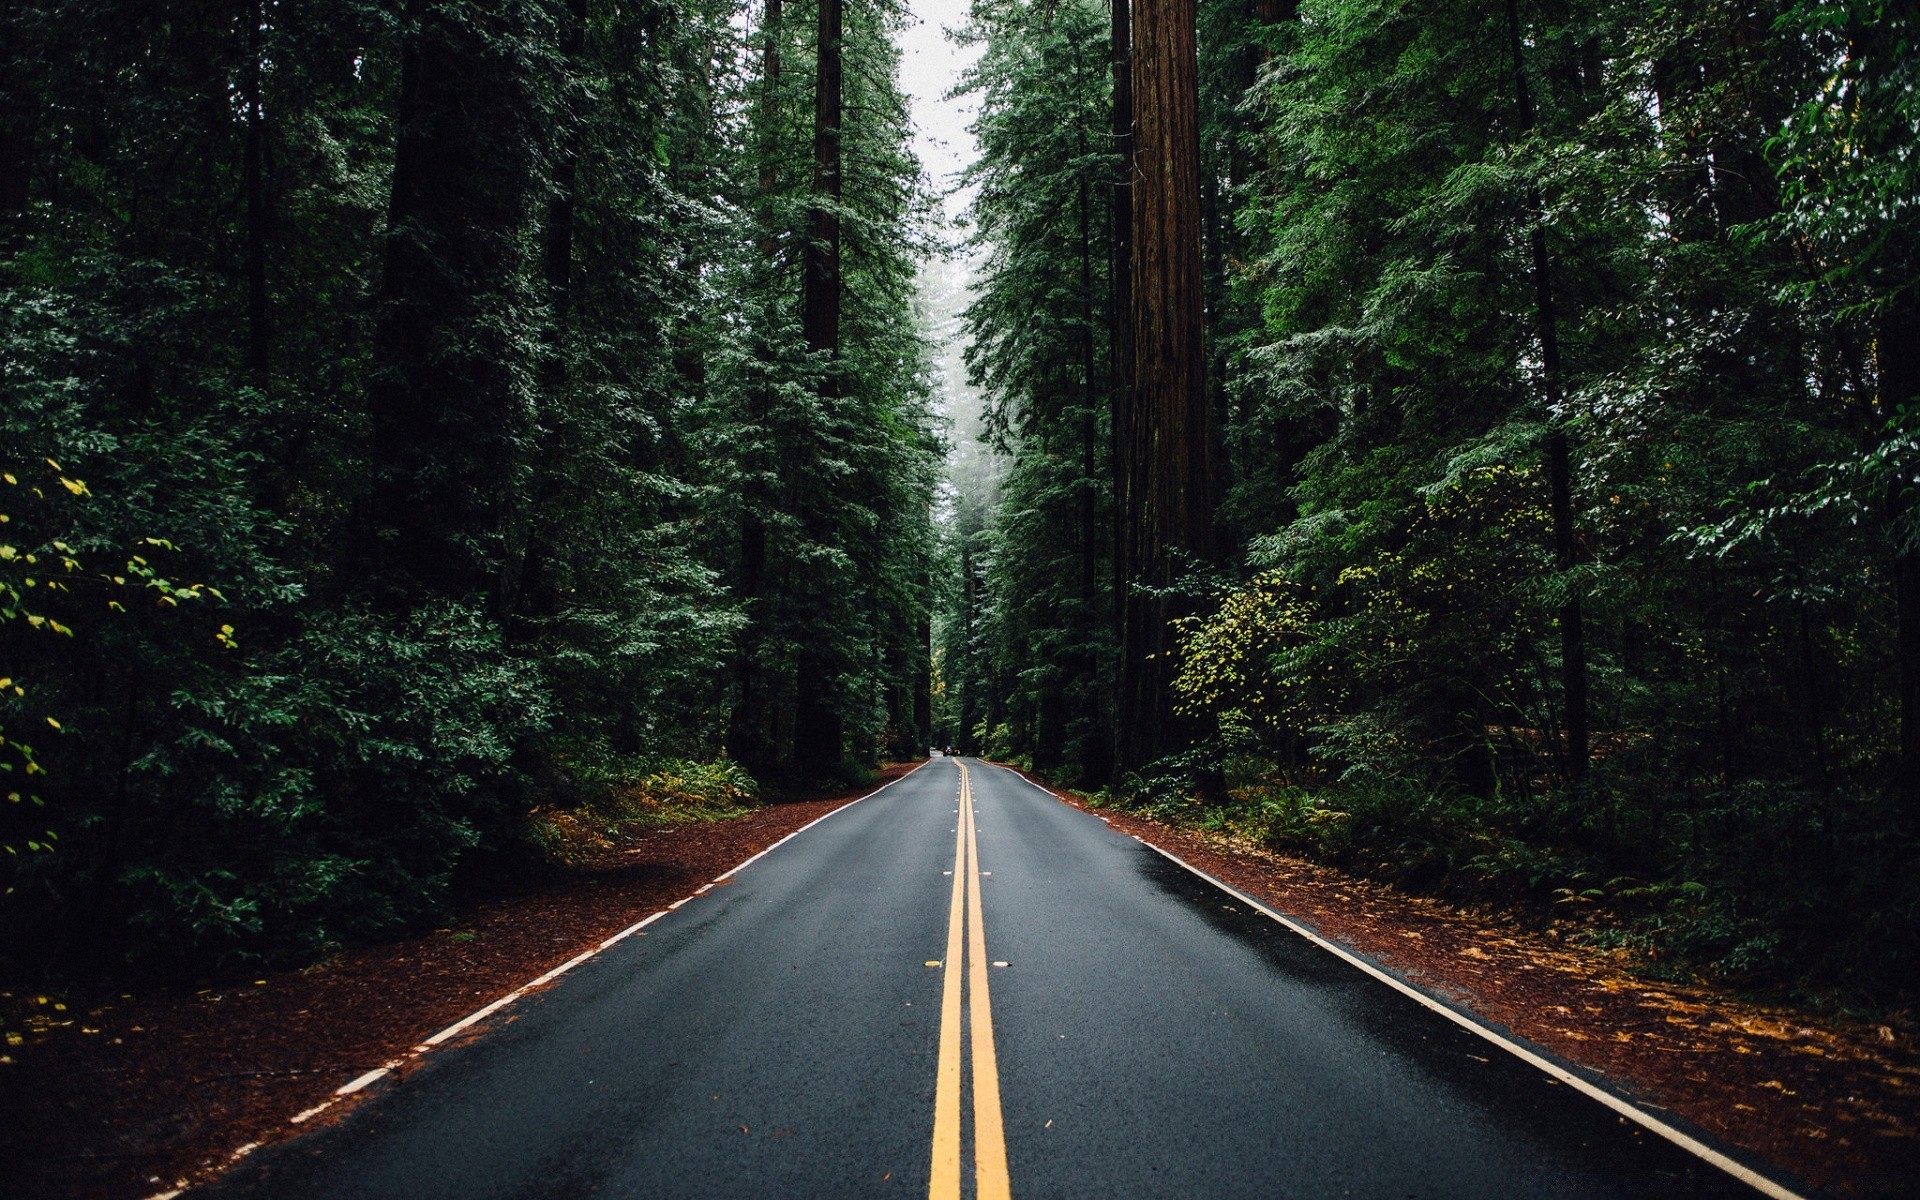 лес дорога древесины руководство дерево шоссе путешествия пейзаж на открытом воздухе природа хвойные асфальт живописный транспортная система